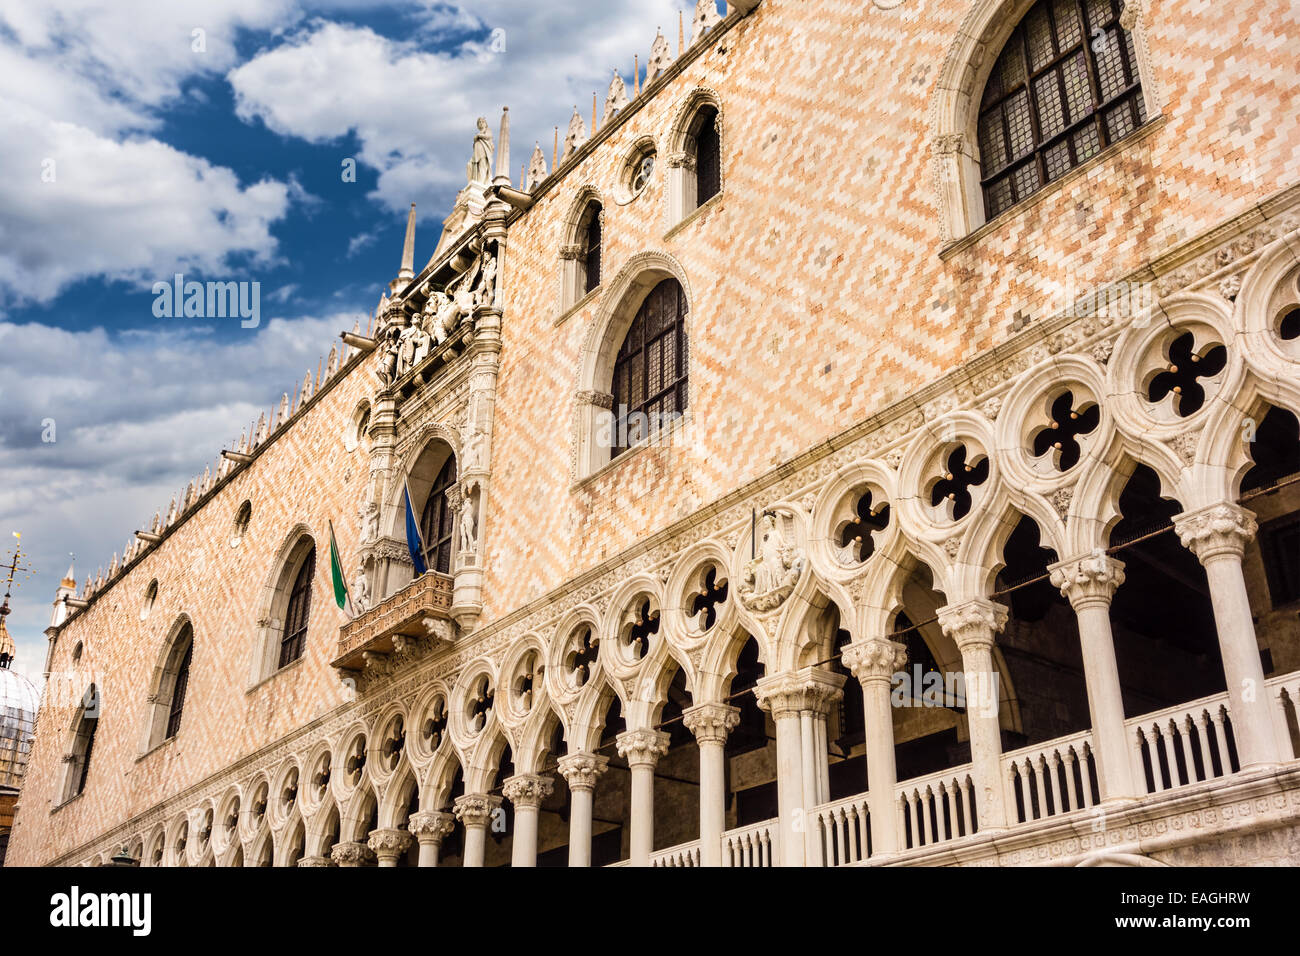 Dettagli architettonici del palazzo storico in Piazza San Marco, Venezia, Italia. Foto Stock